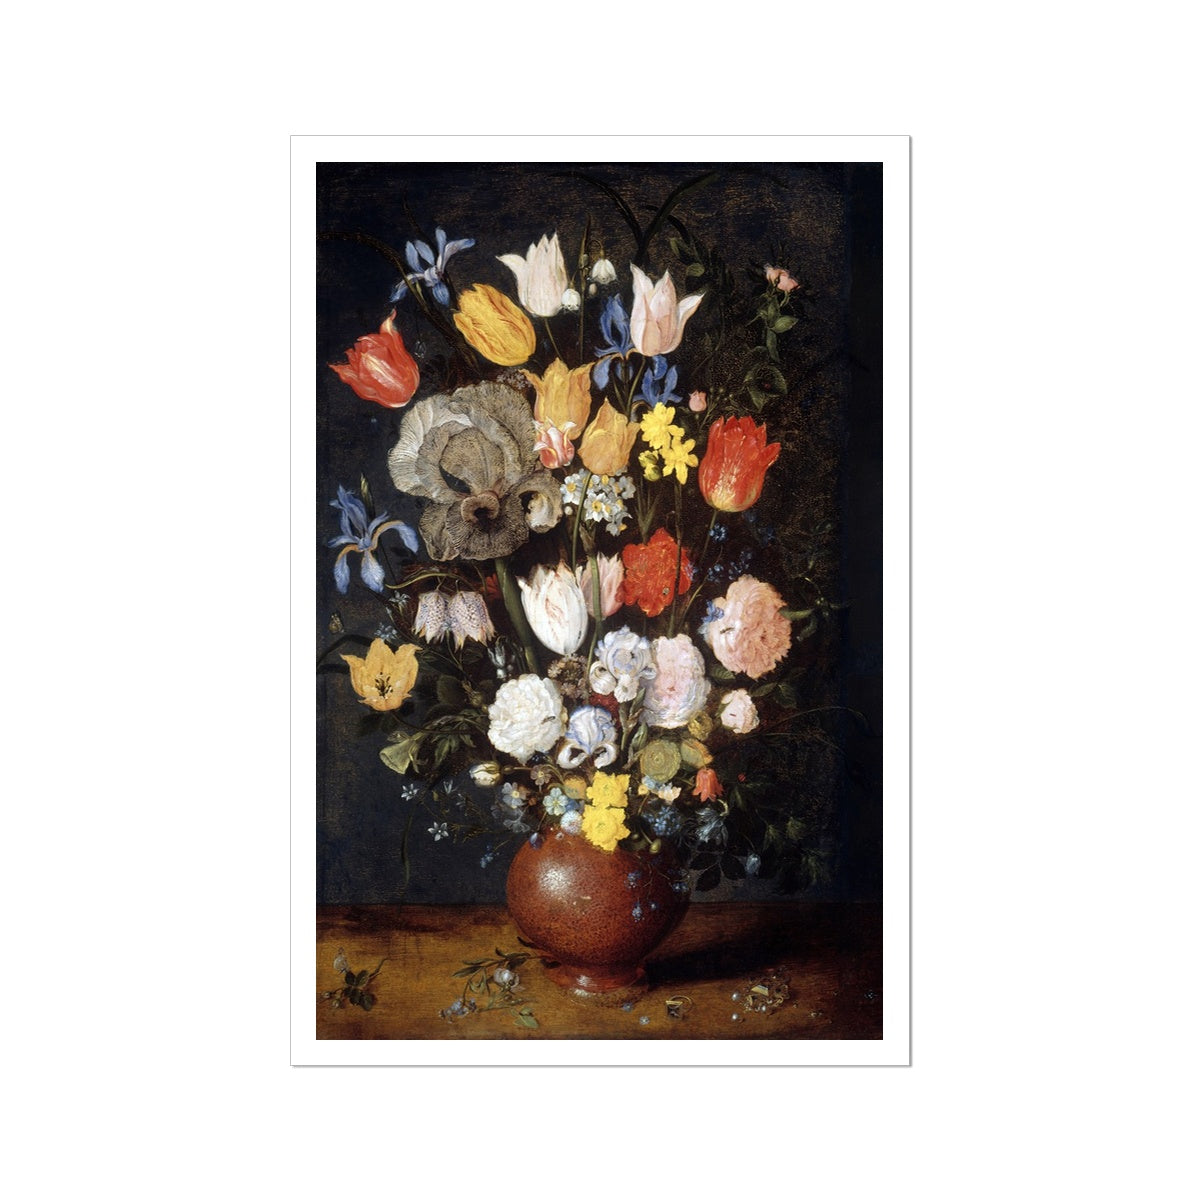 &#39;Bouquet of Flowers in an Earthenware Vase&#39; Still Life by Jan Breughel the Elder. Open Edition Fine Art Print. Historic Art